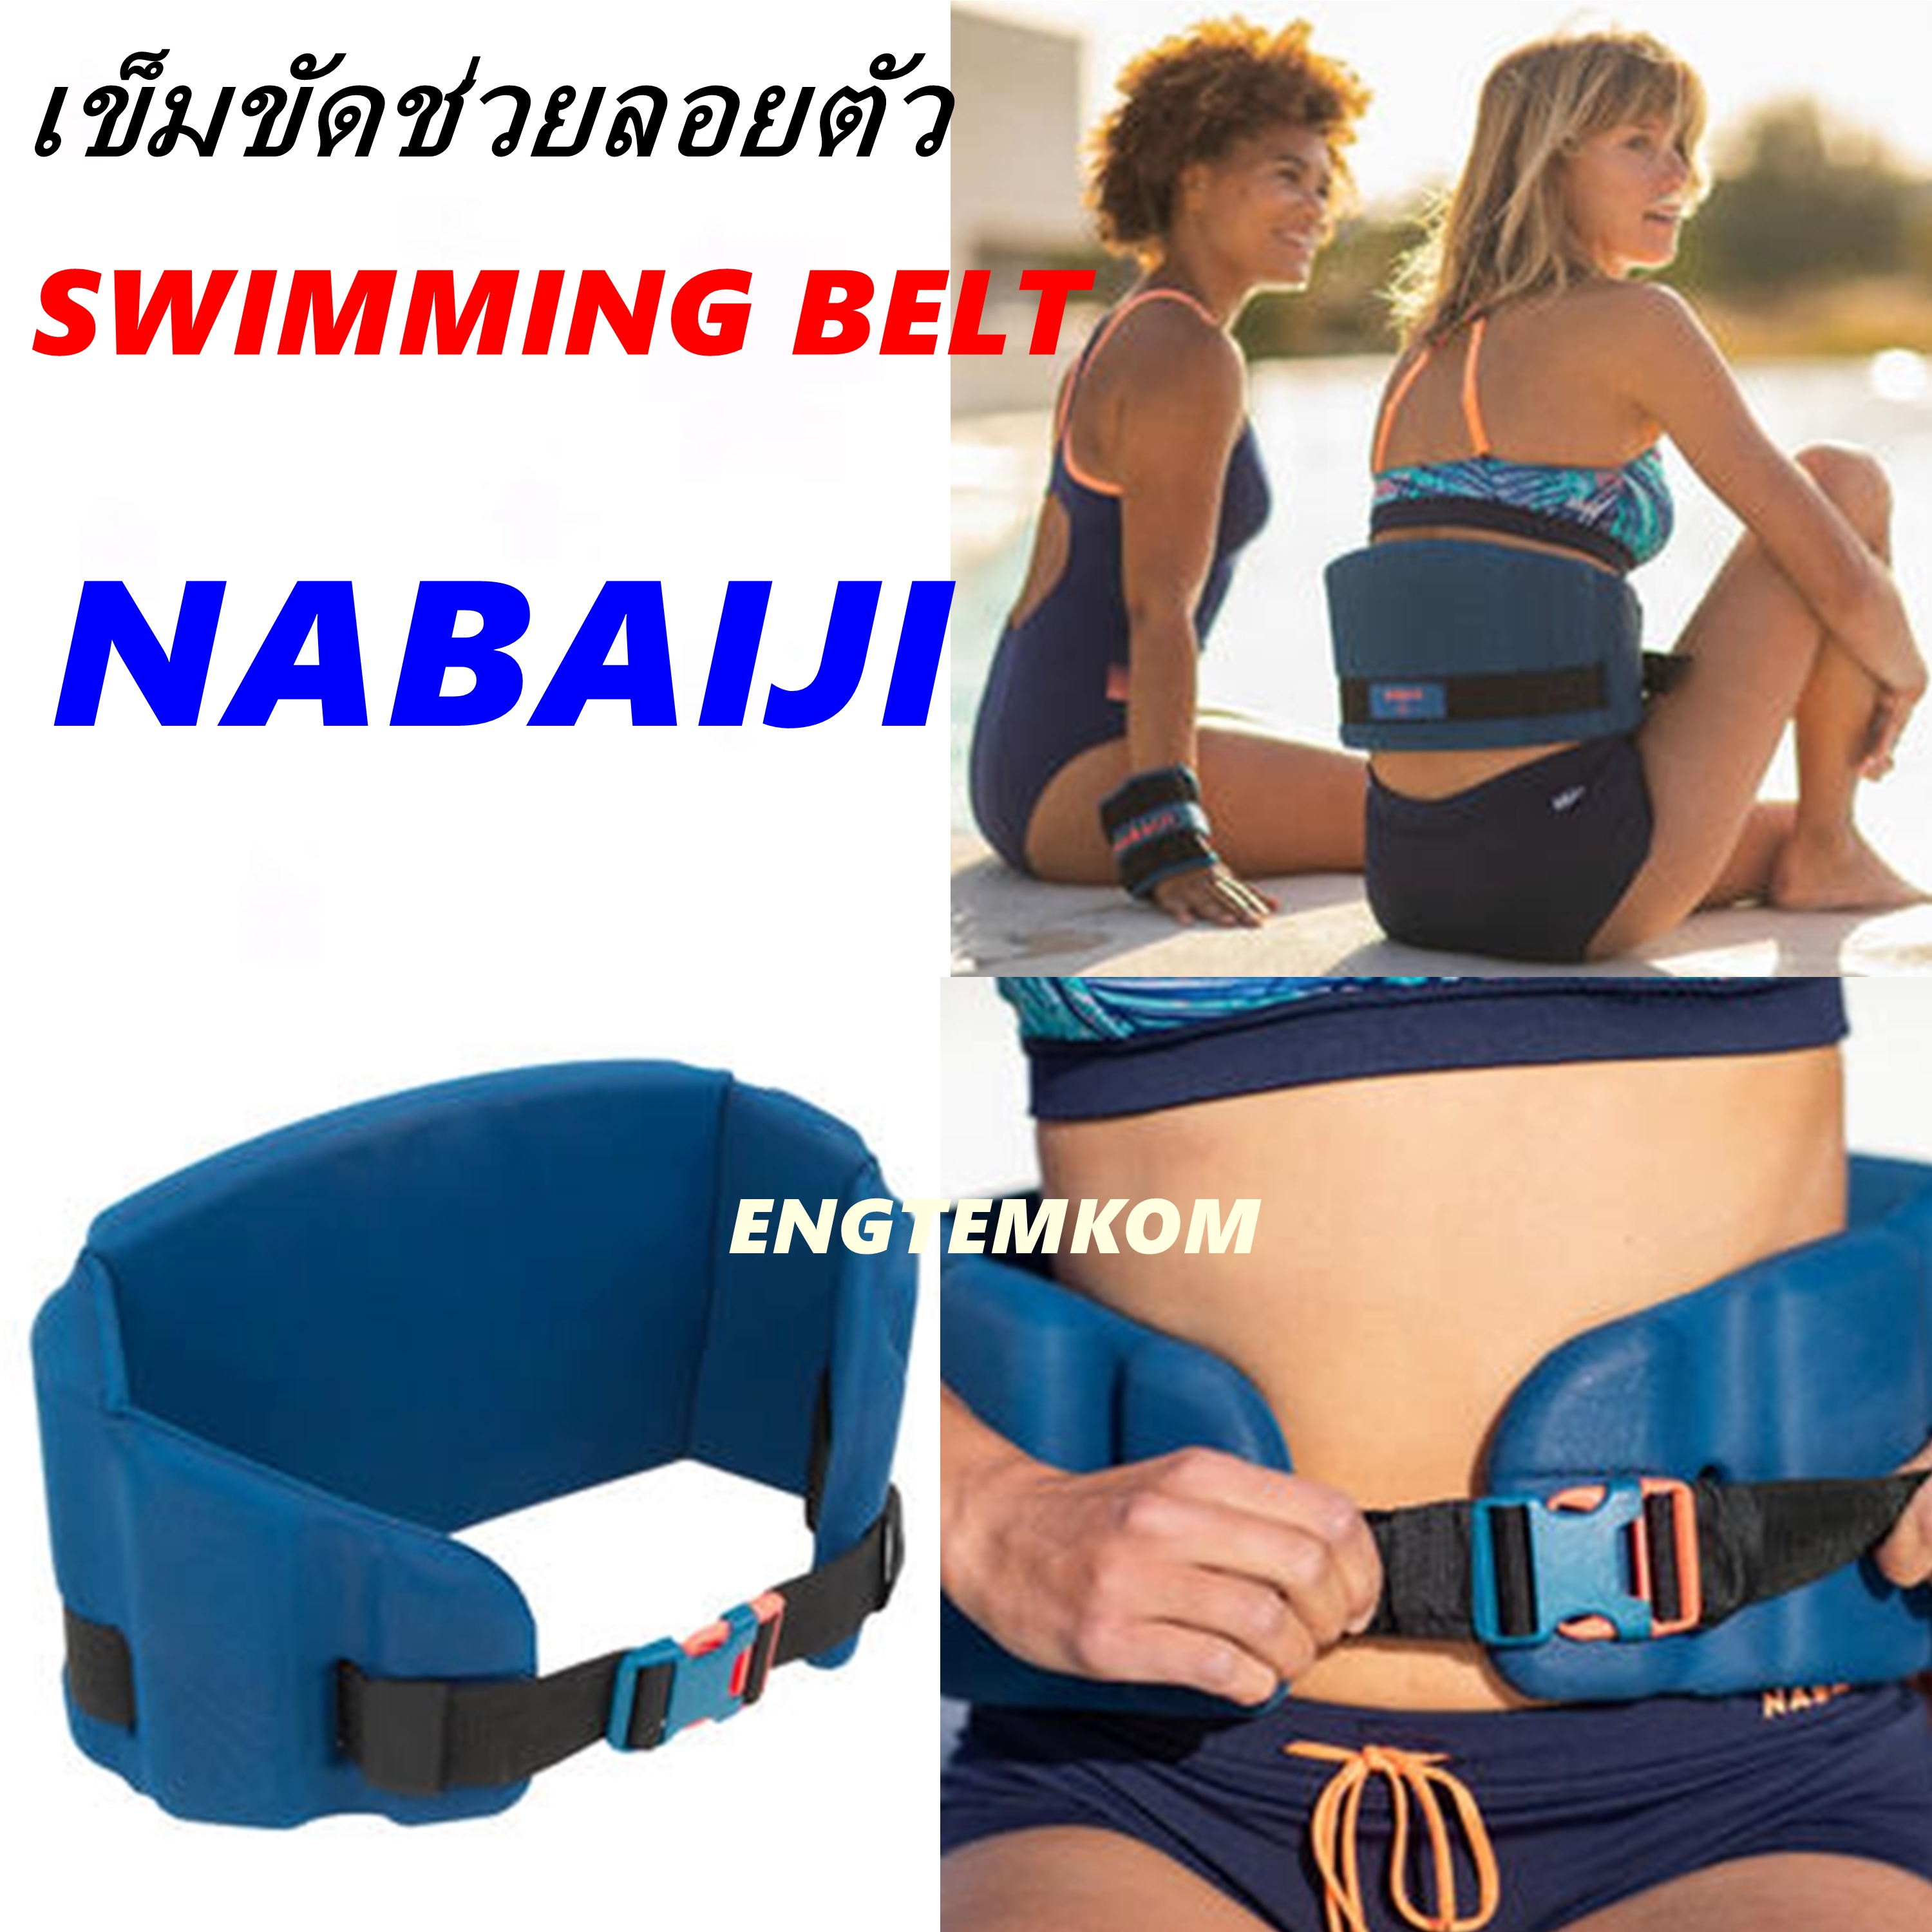 มุมมองเพิ่มเติมเกี่ยวกับ เสื้อชูชีพ ชูชีพ เข็มขัดชูชีพ เข็มขัดว่ายน้ำ ชูชีพคาดเอว ชูชีพพกพา ชูชีพผูใหญ่ ชูชีพเด็ก Life jacket life belt  swimming belt Aqness  Aqging Foam Belt NABAIJI